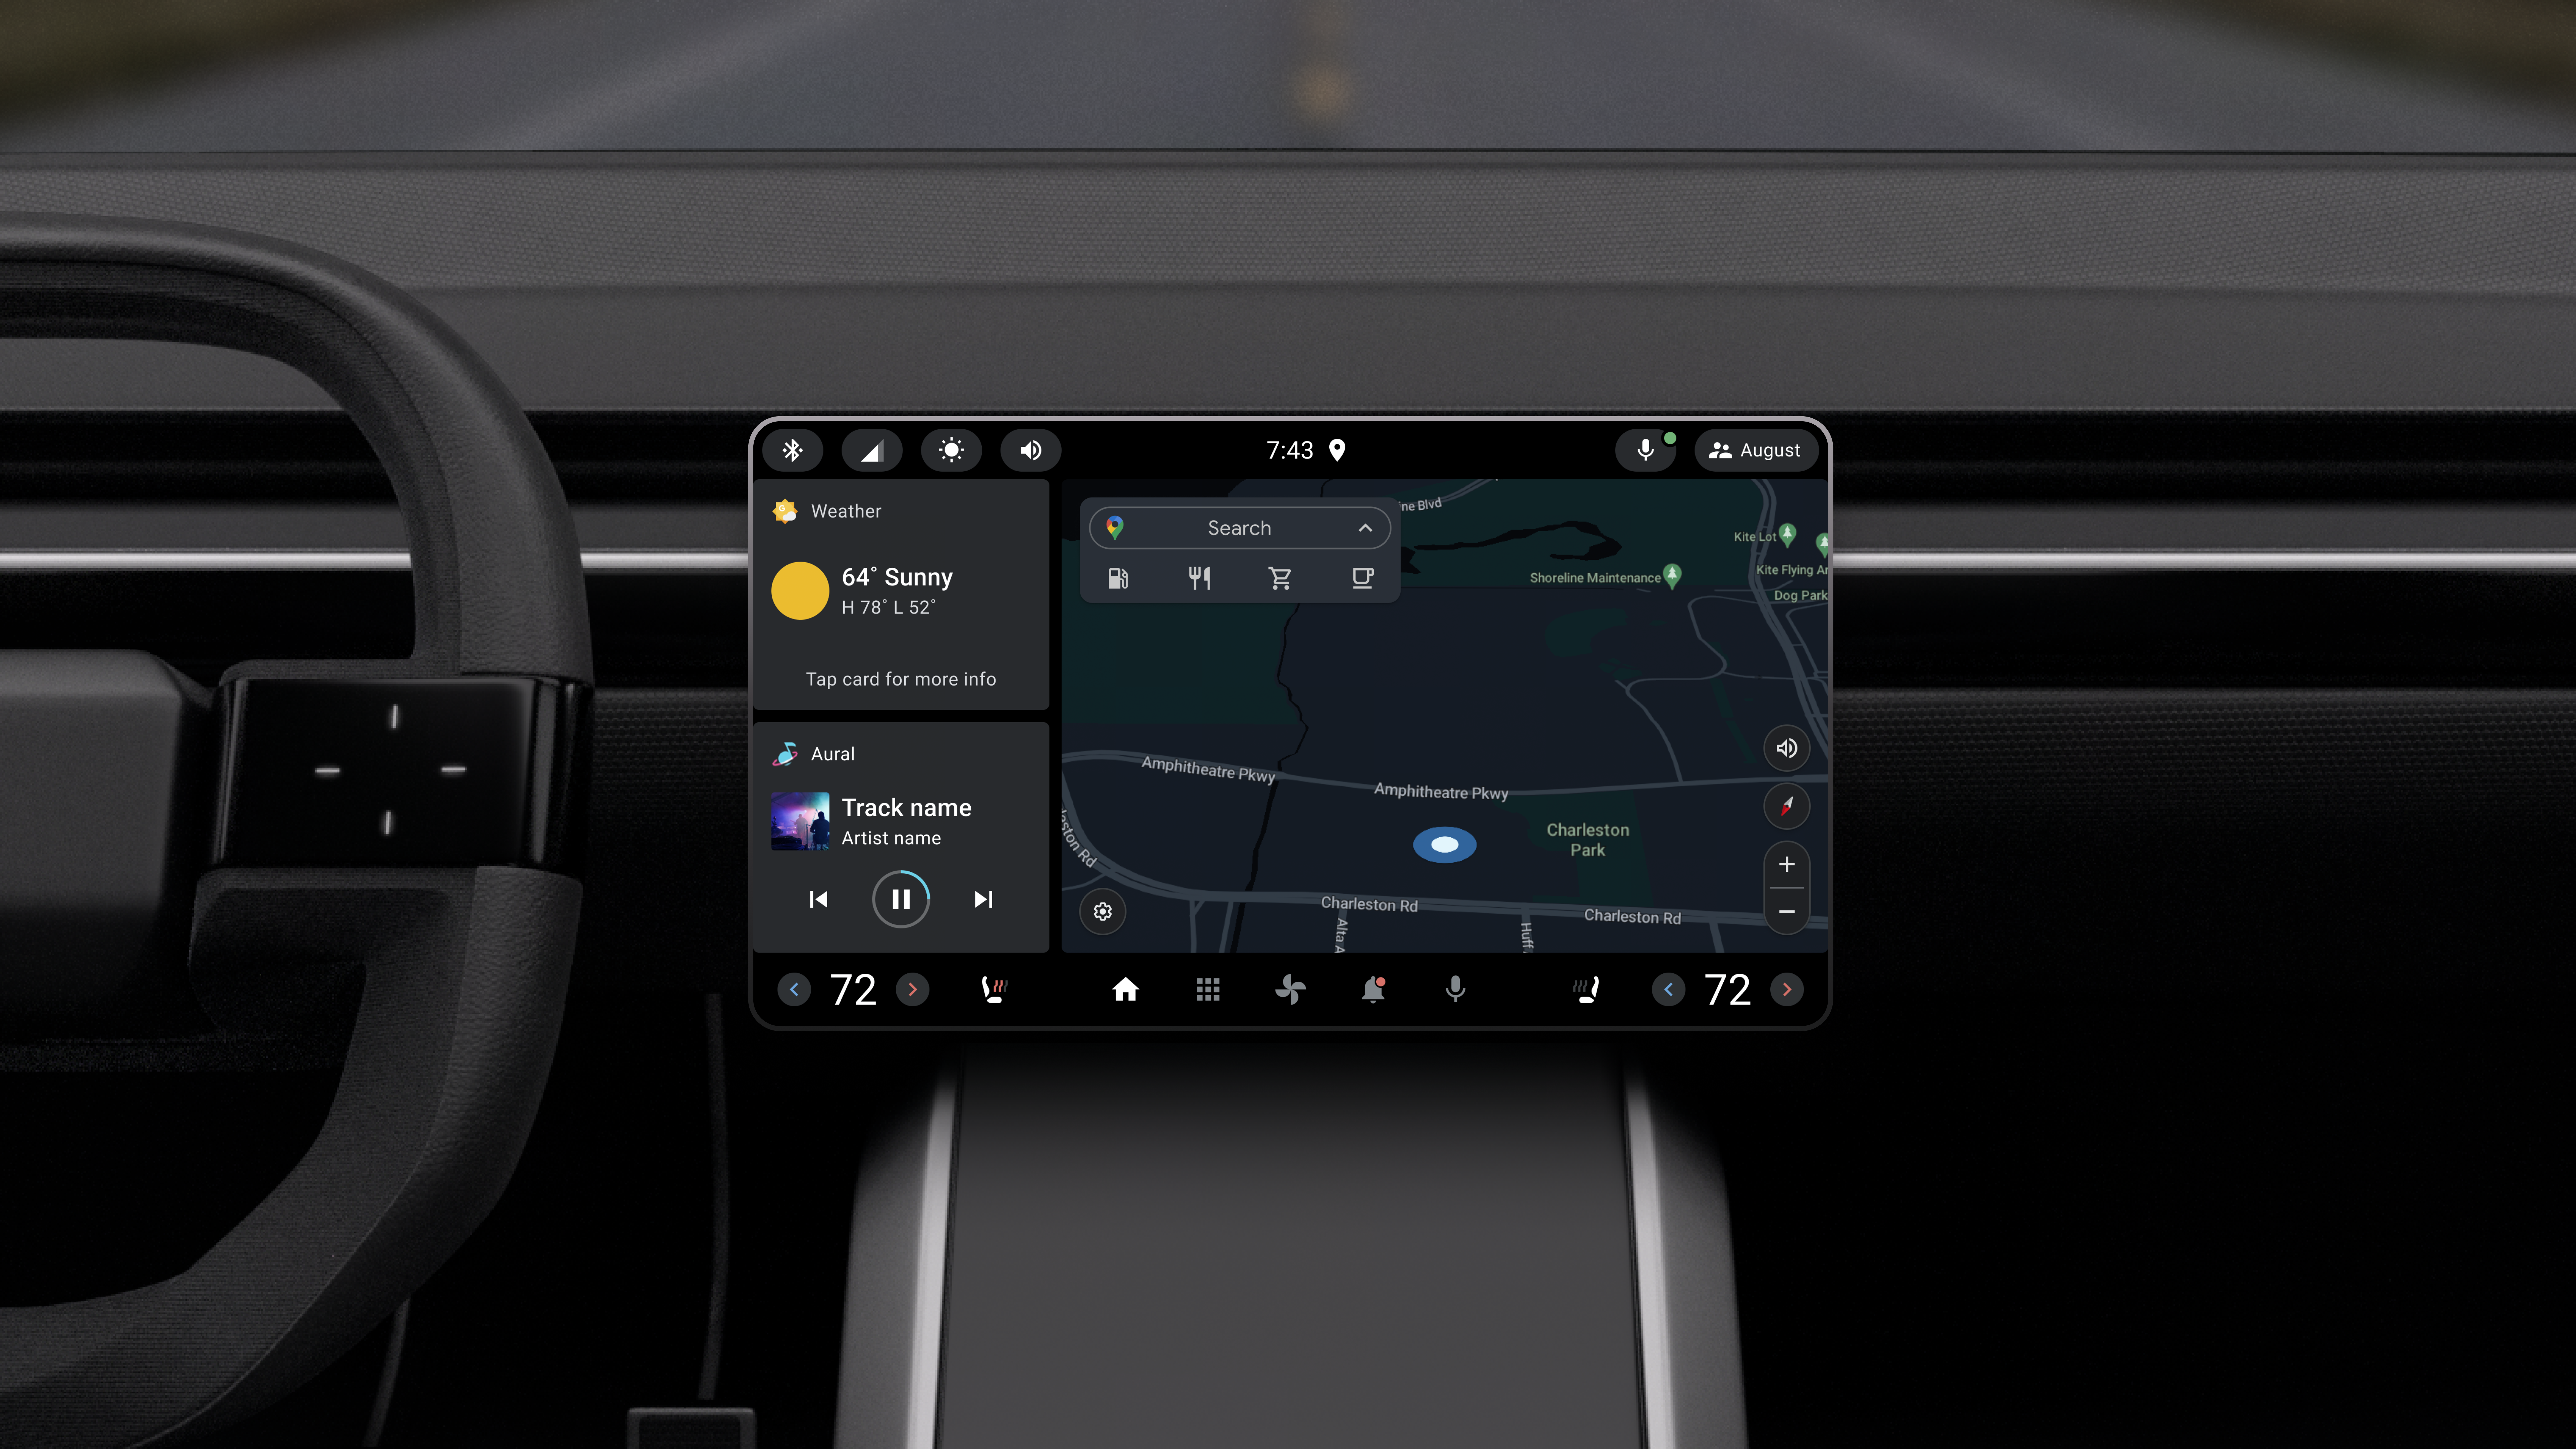 Bảng điều khiển ô tô với màn hình nhỏ ở định dạng ngang cho thấy thiết kế tham chiếu